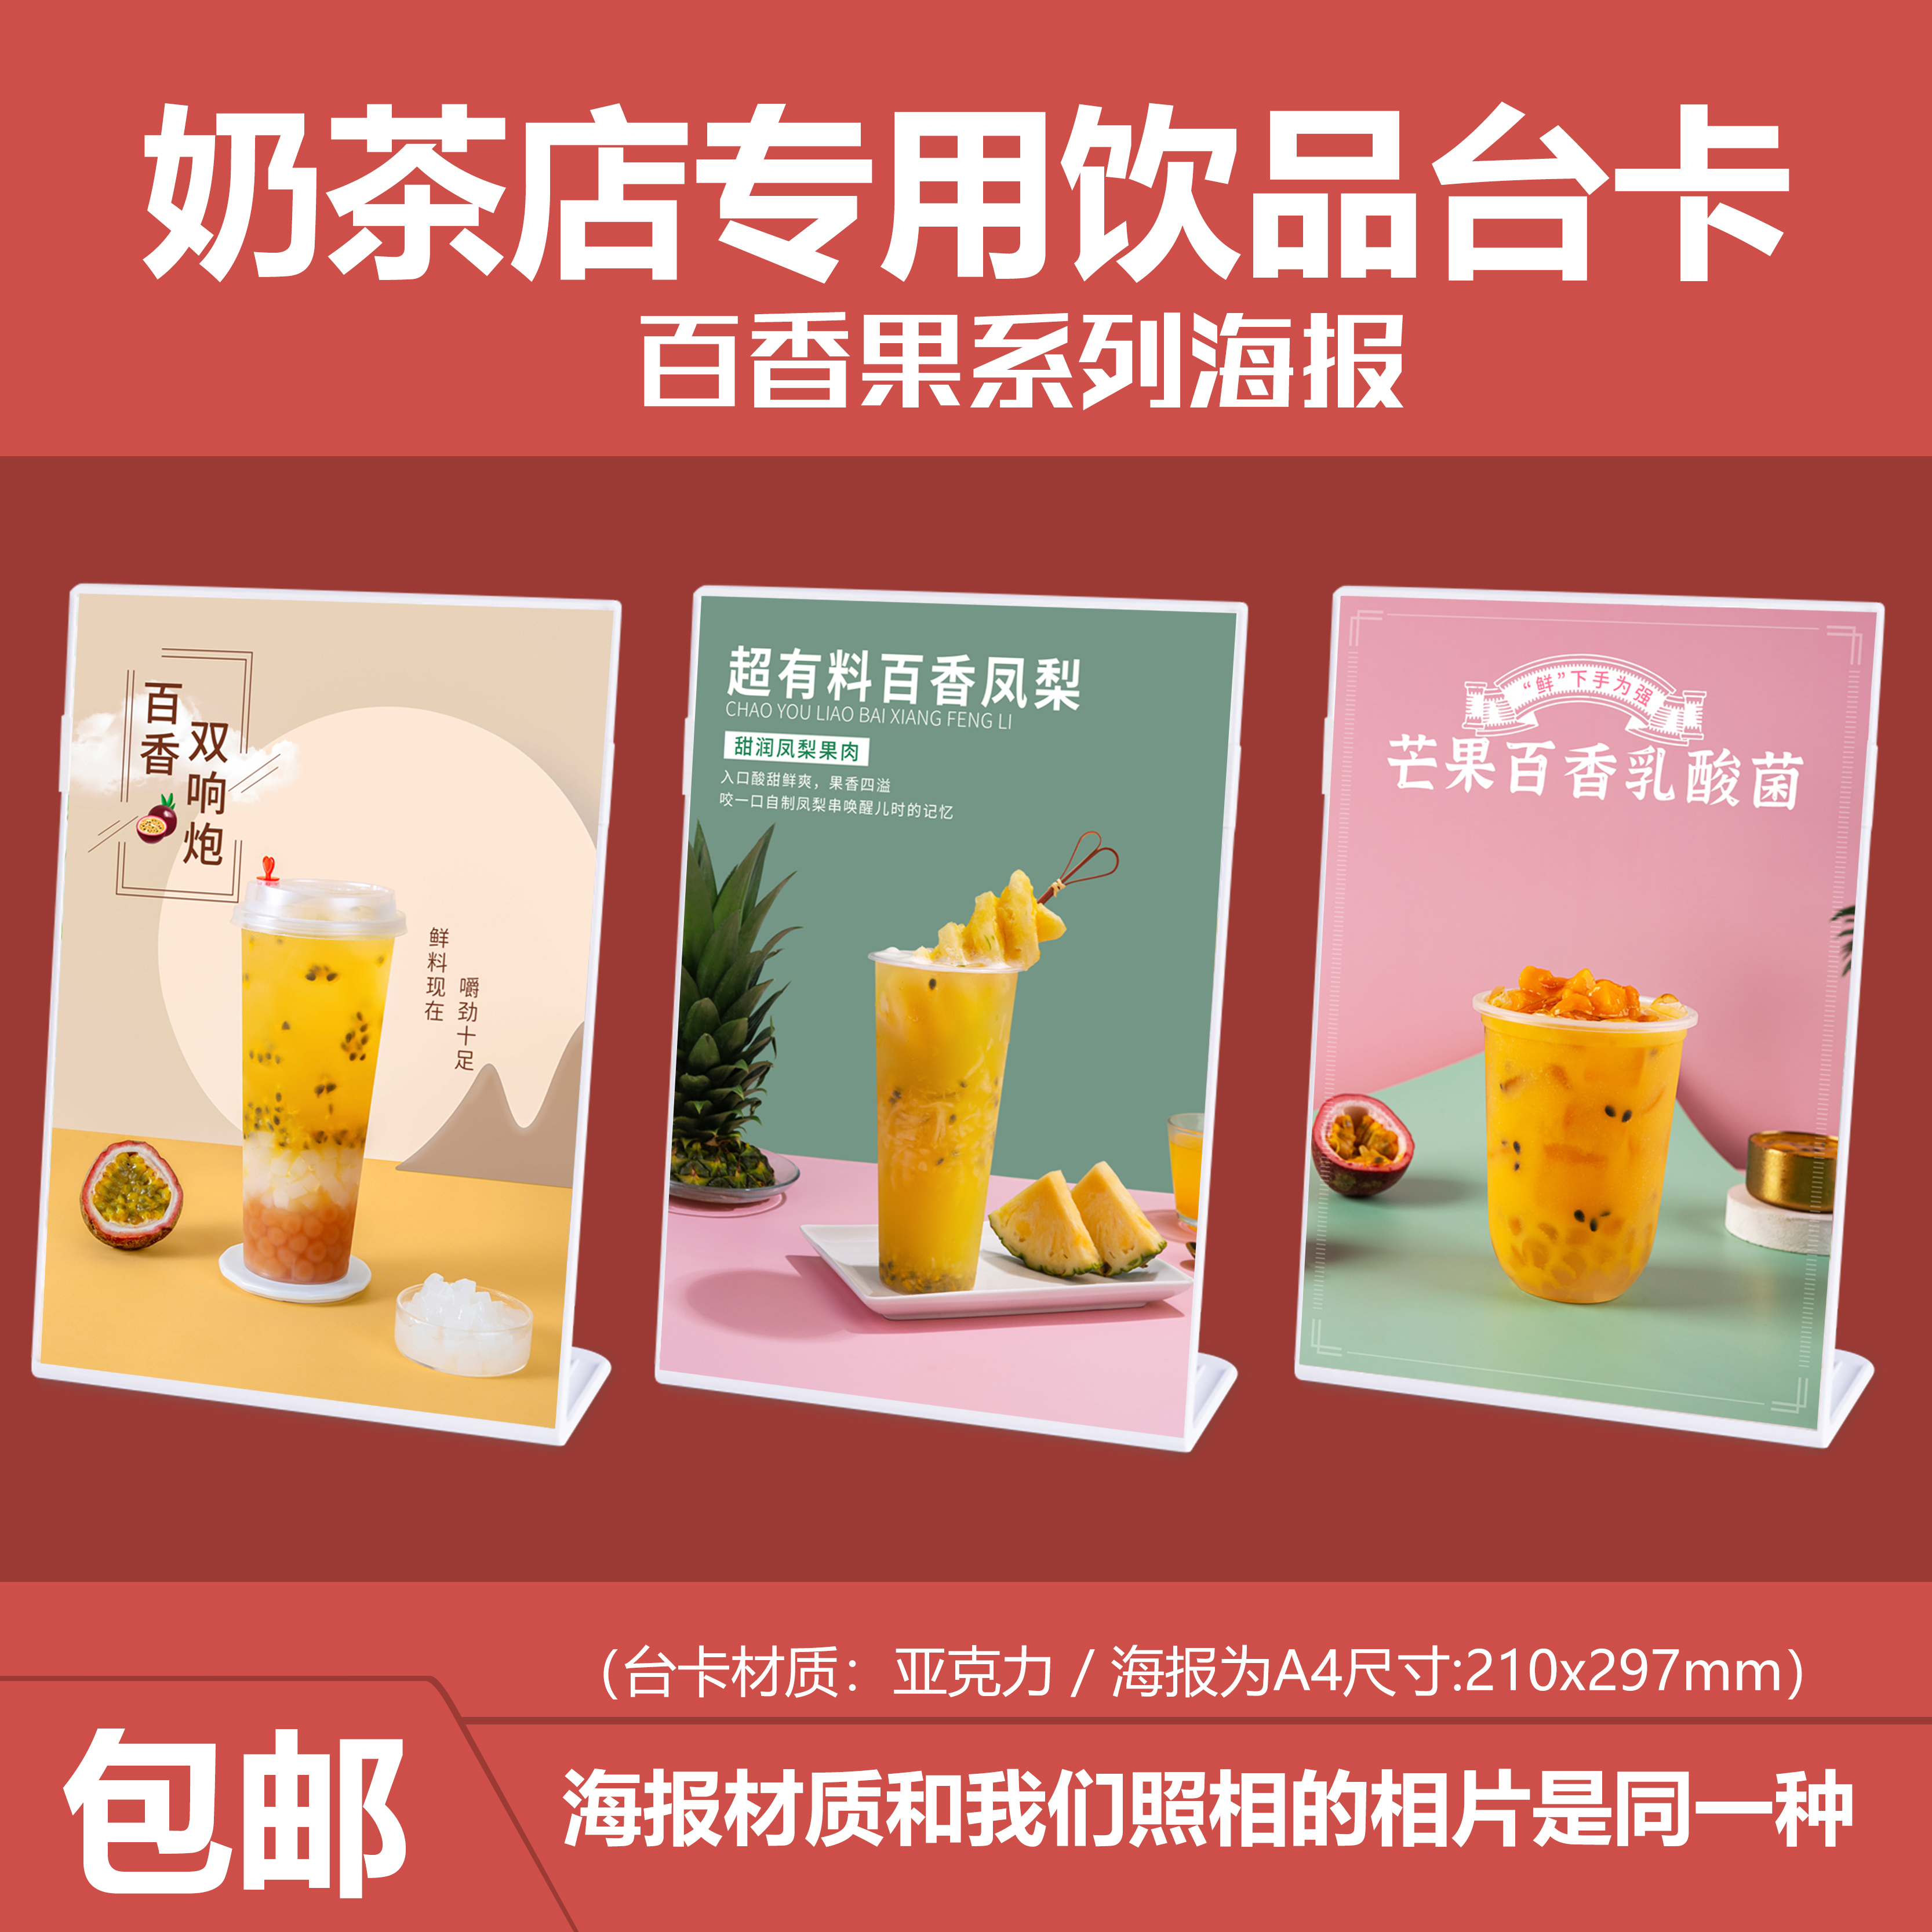 百香果系列饮品奶茶店产品宣传海报定制图片设计广告牌台卡展示牌